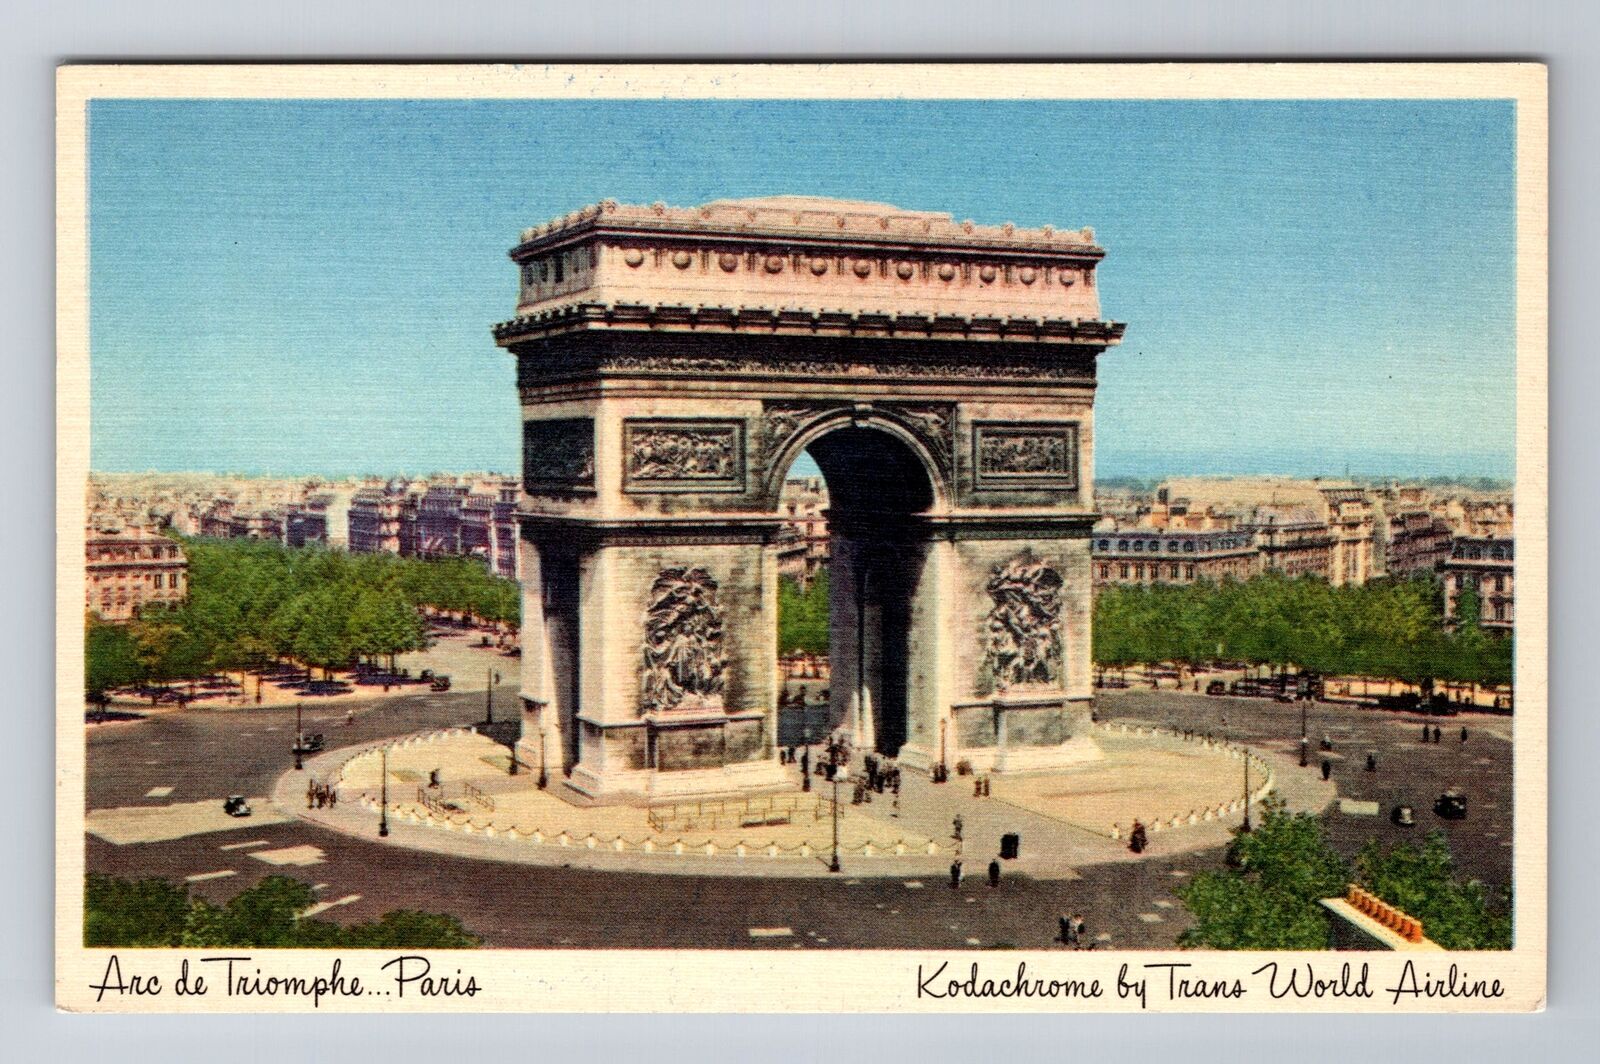 Paris-France, Arc de Triomphe, Antique Airline Travel Advertising Postcard